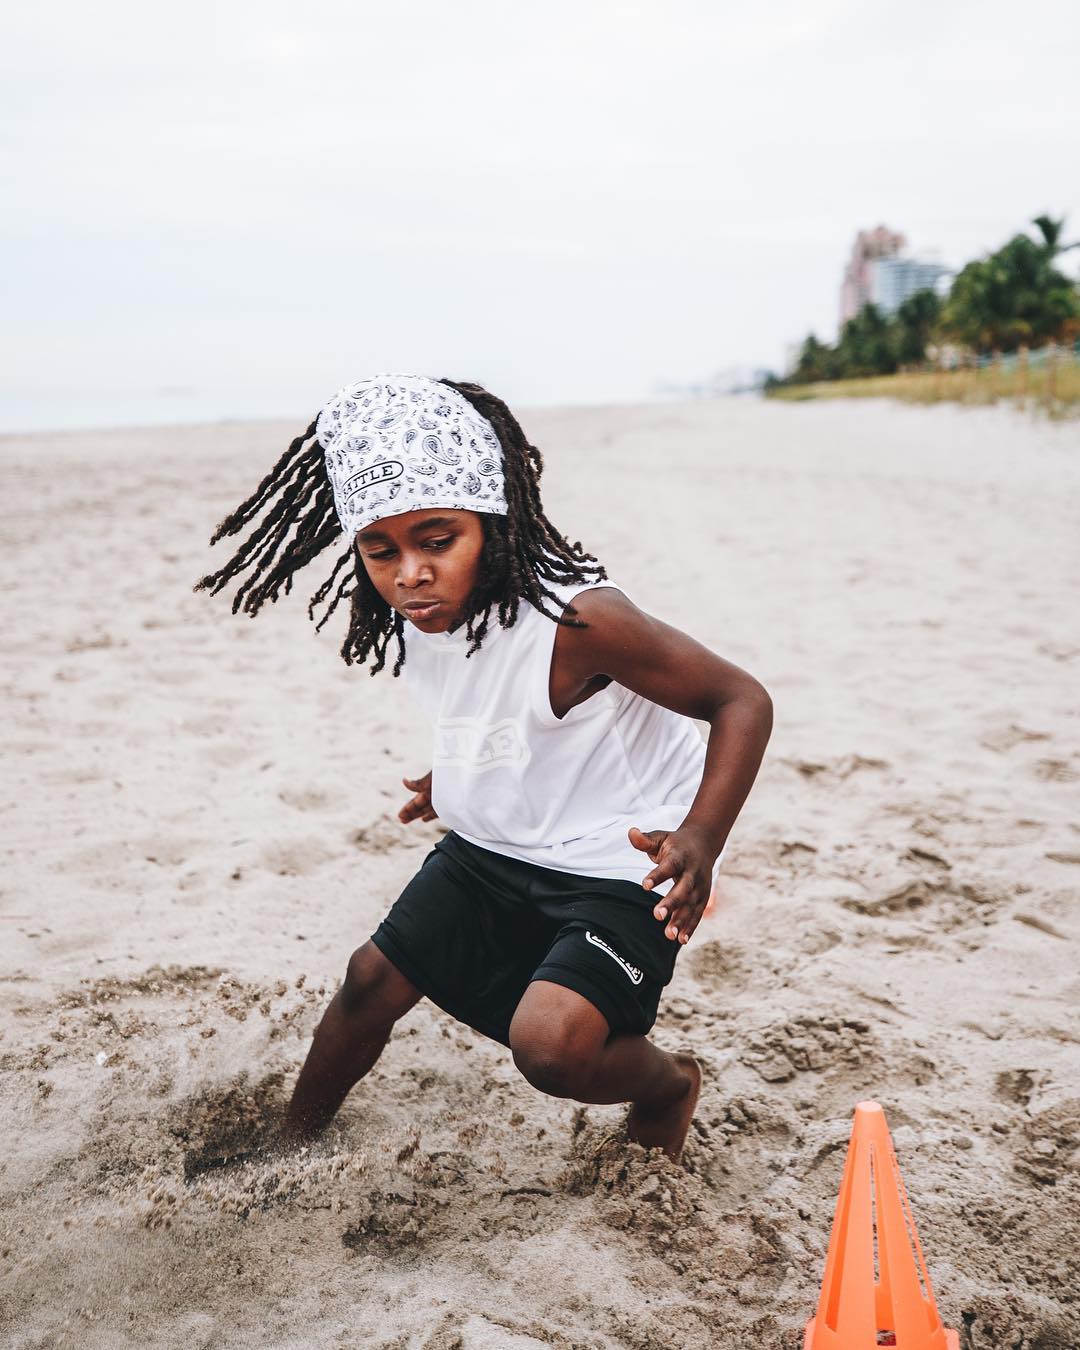 Ona Geleceğin Bolt'u Diyorlar: 7 Yaşındaki Rudolph Ingram 100 Metreyi 13 Saniyede Koşuyor 3